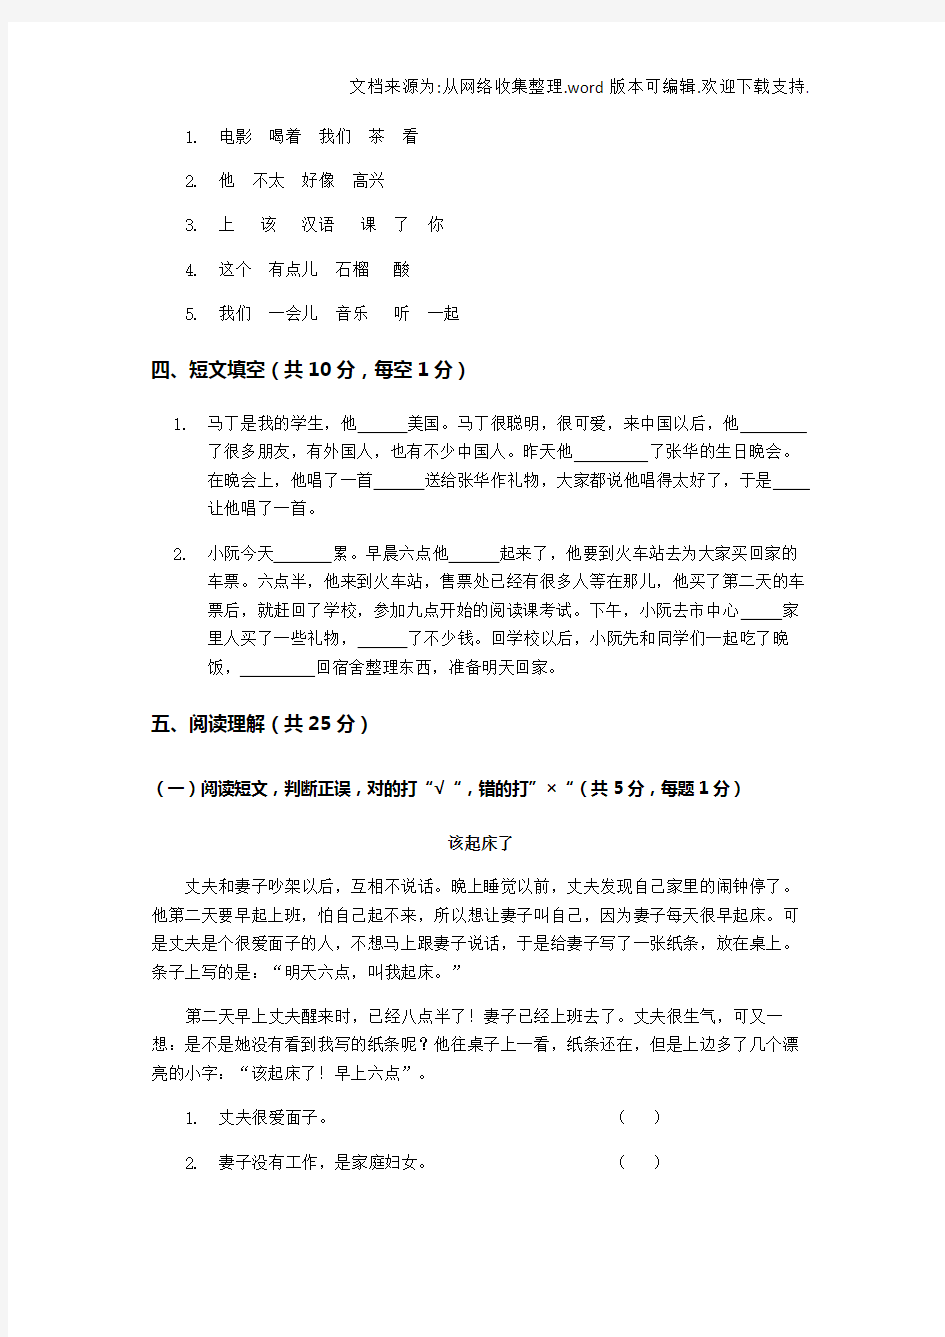 初级汉语阅读试卷(供参考)